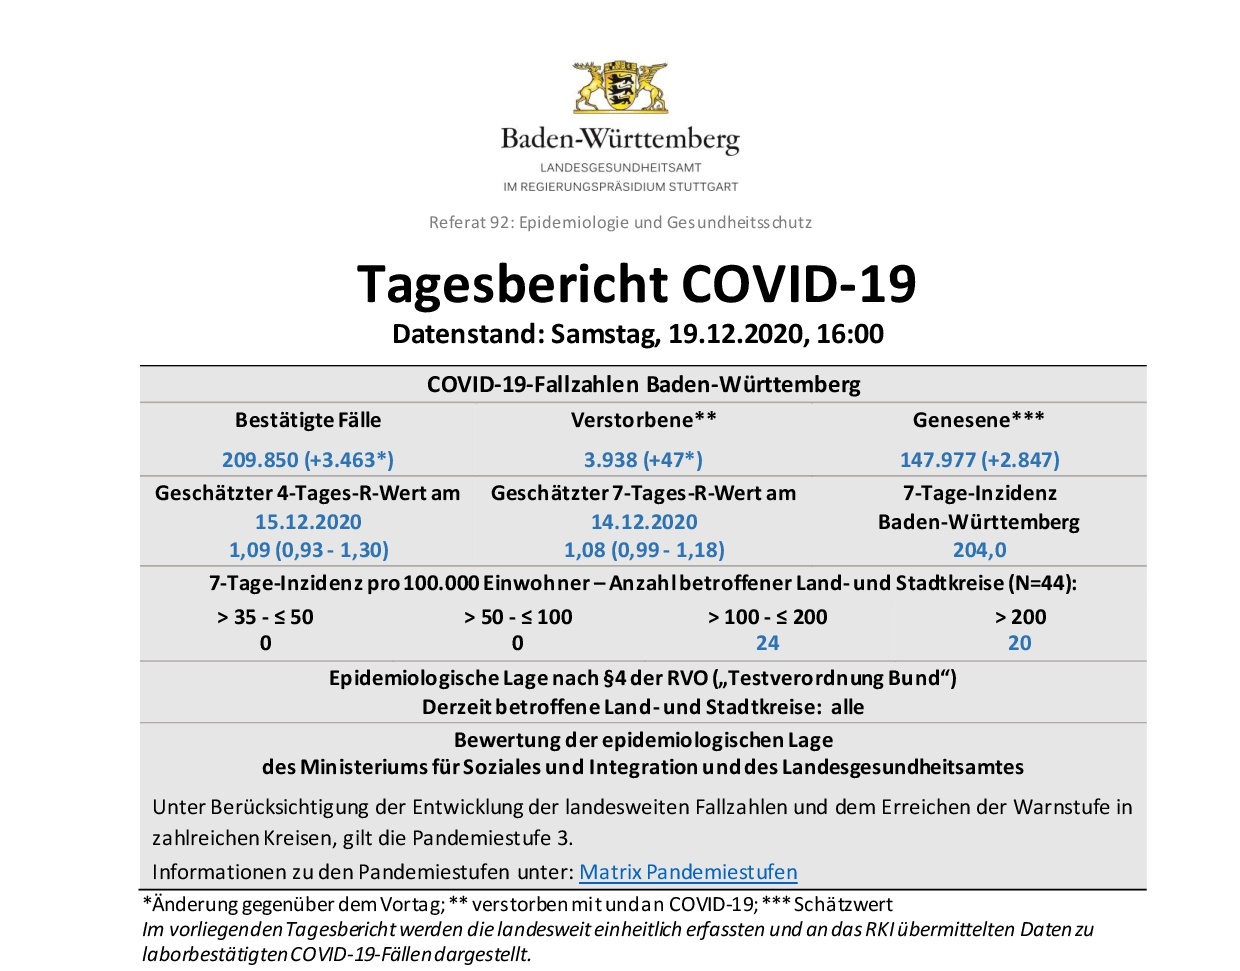 COVID-19 Tagesbericht (19.12.2020) des Landesgesundheitsamts Baden-Württemberg – (ausführlich)